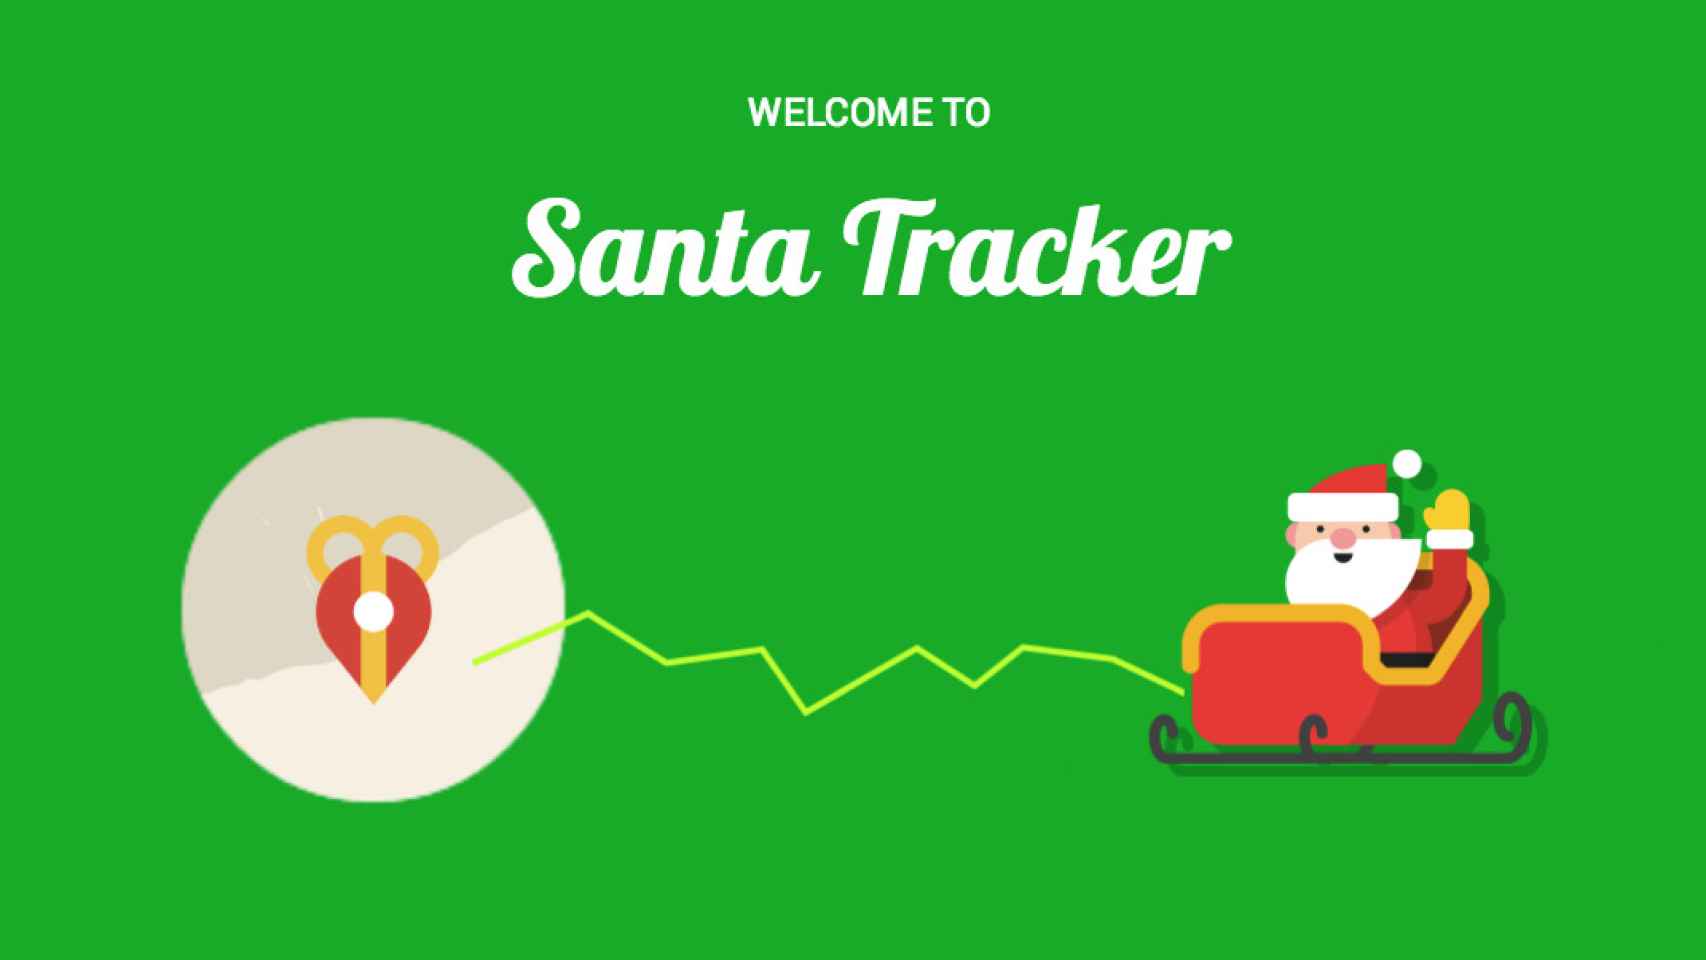 Descubre todas las tradiciones navideñas del mundo con Google Santa Tracker